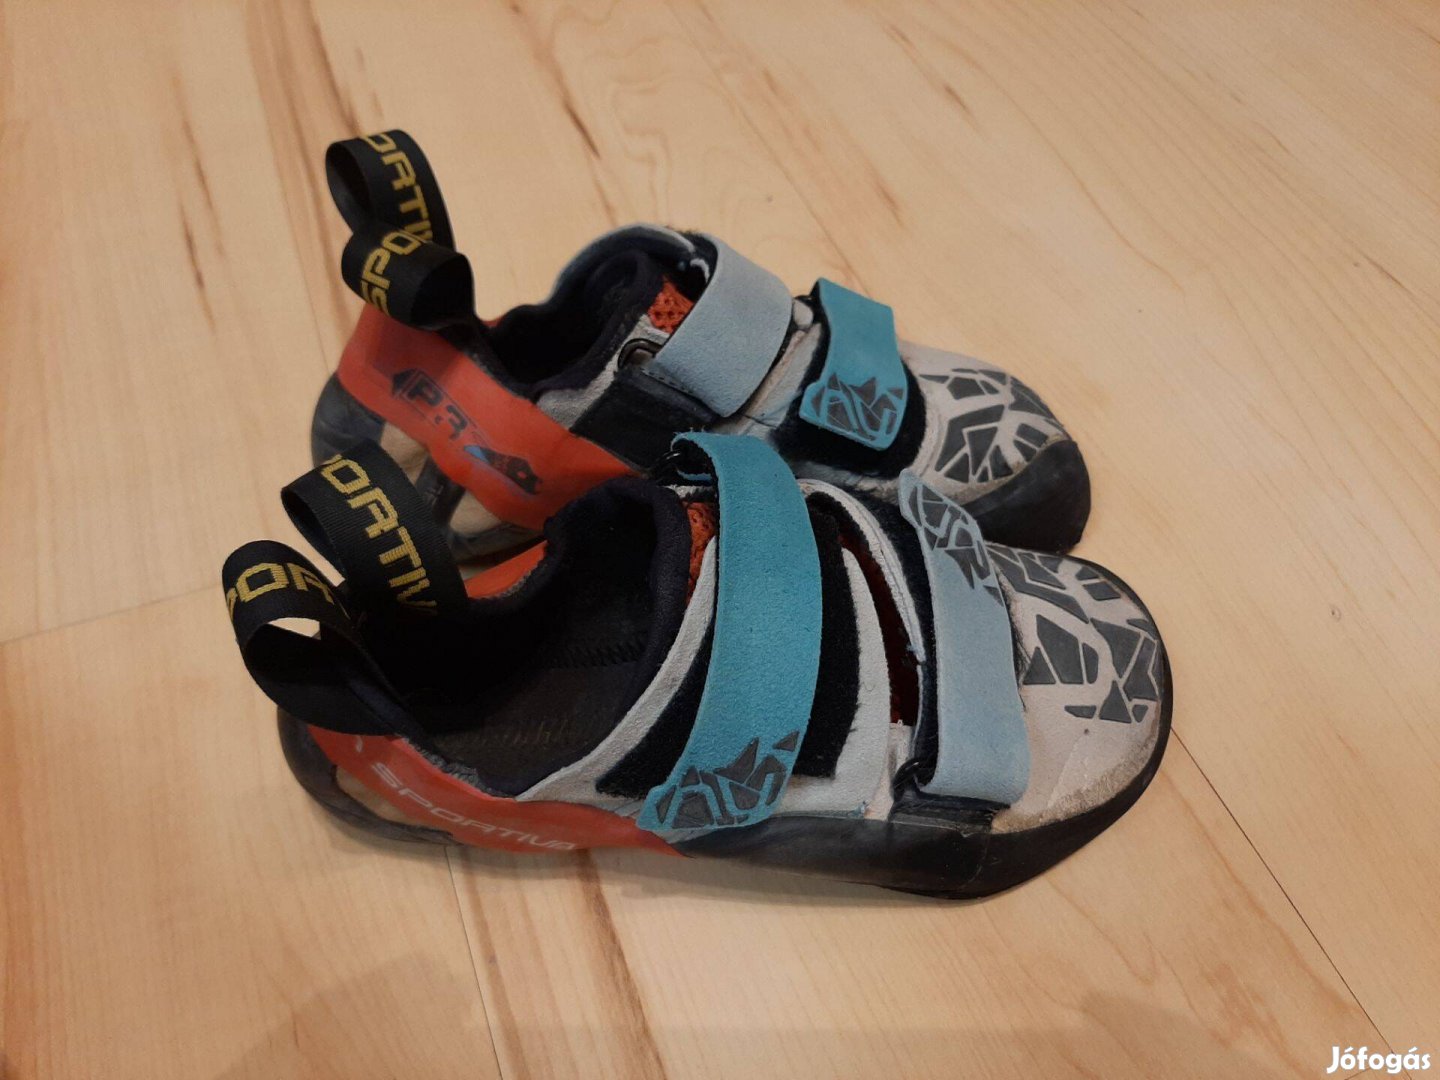 La sportiva Otaki mászócipő 37.5 falmászó cipő